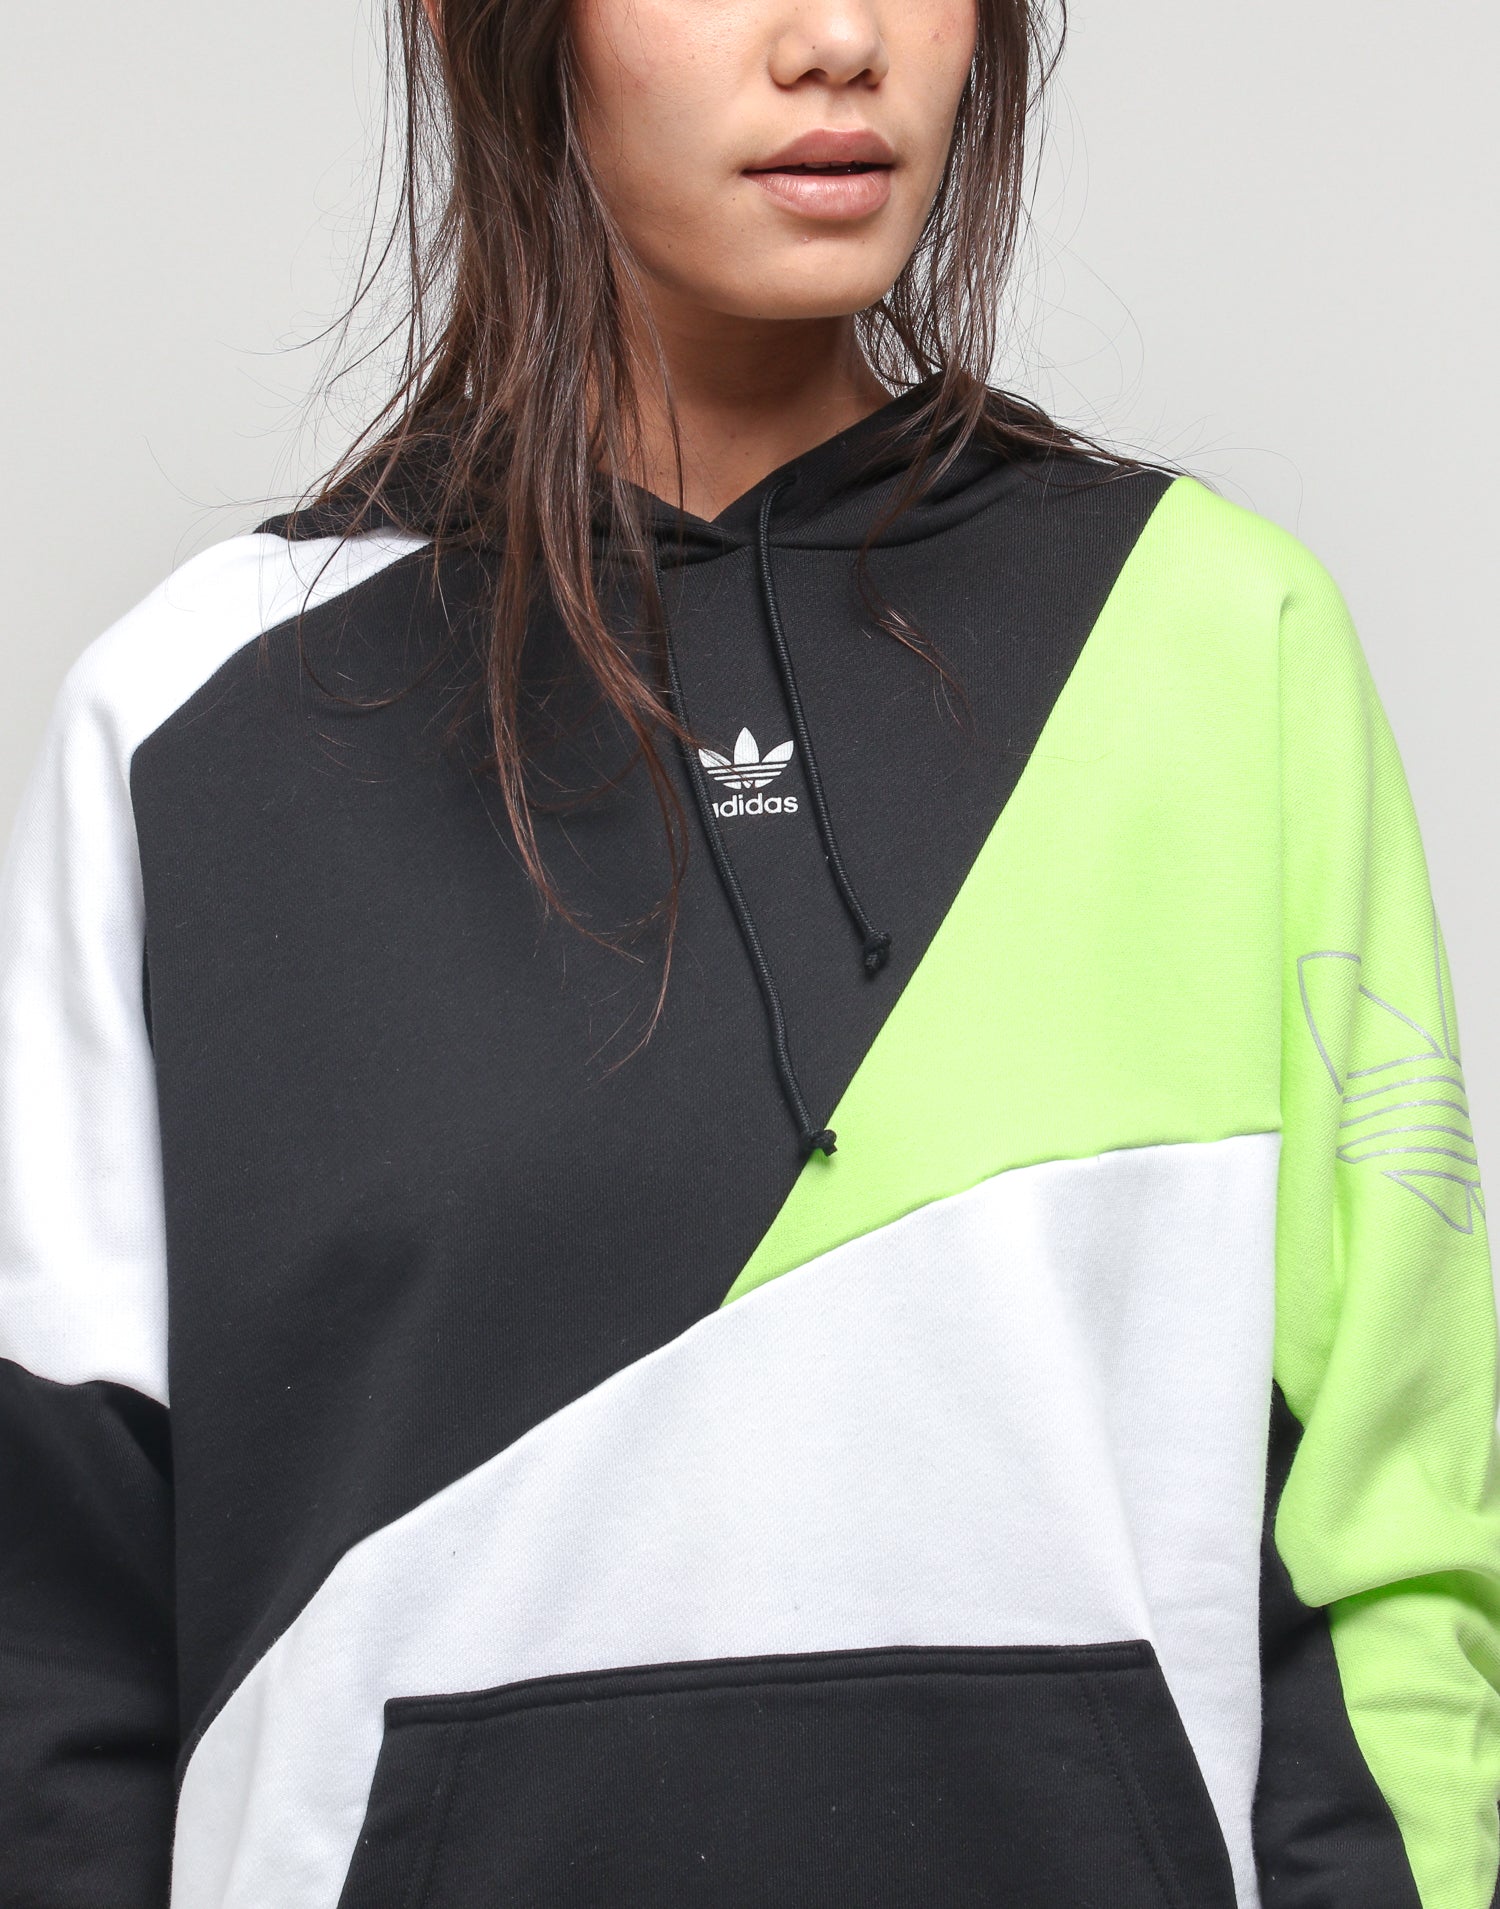 adidas black and white women's sweatshirt